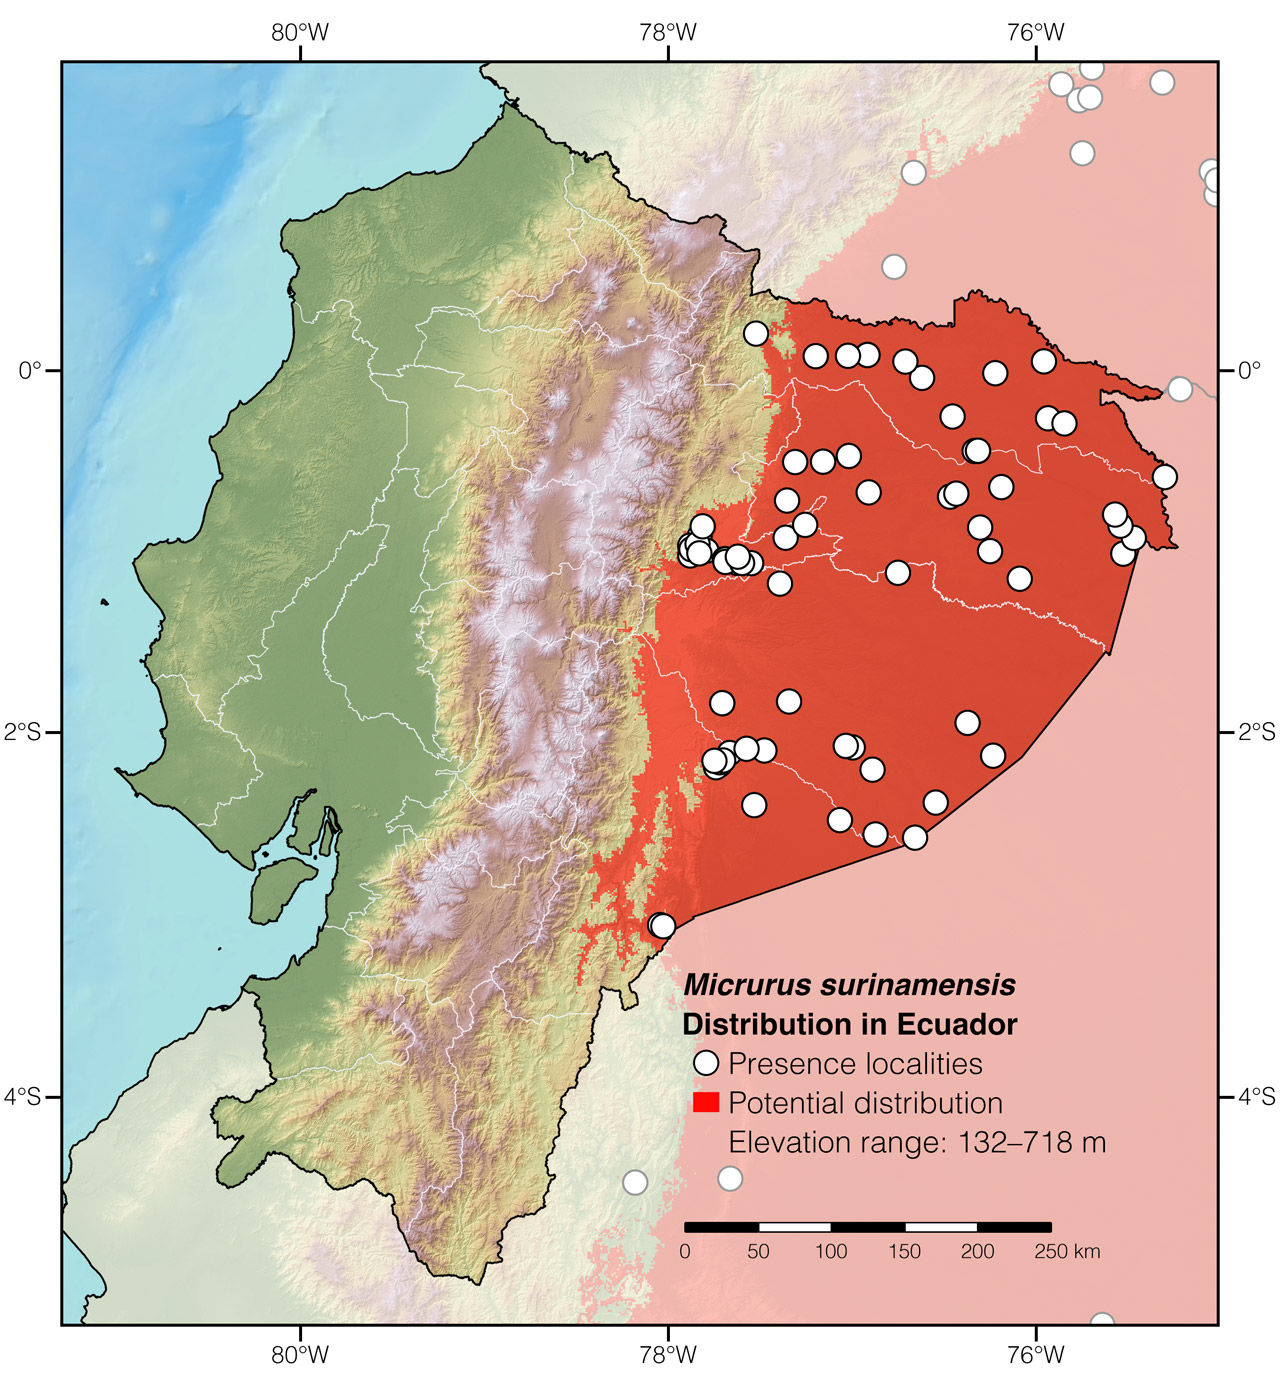 Distribution of Micrurus surinamensis in Ecuador